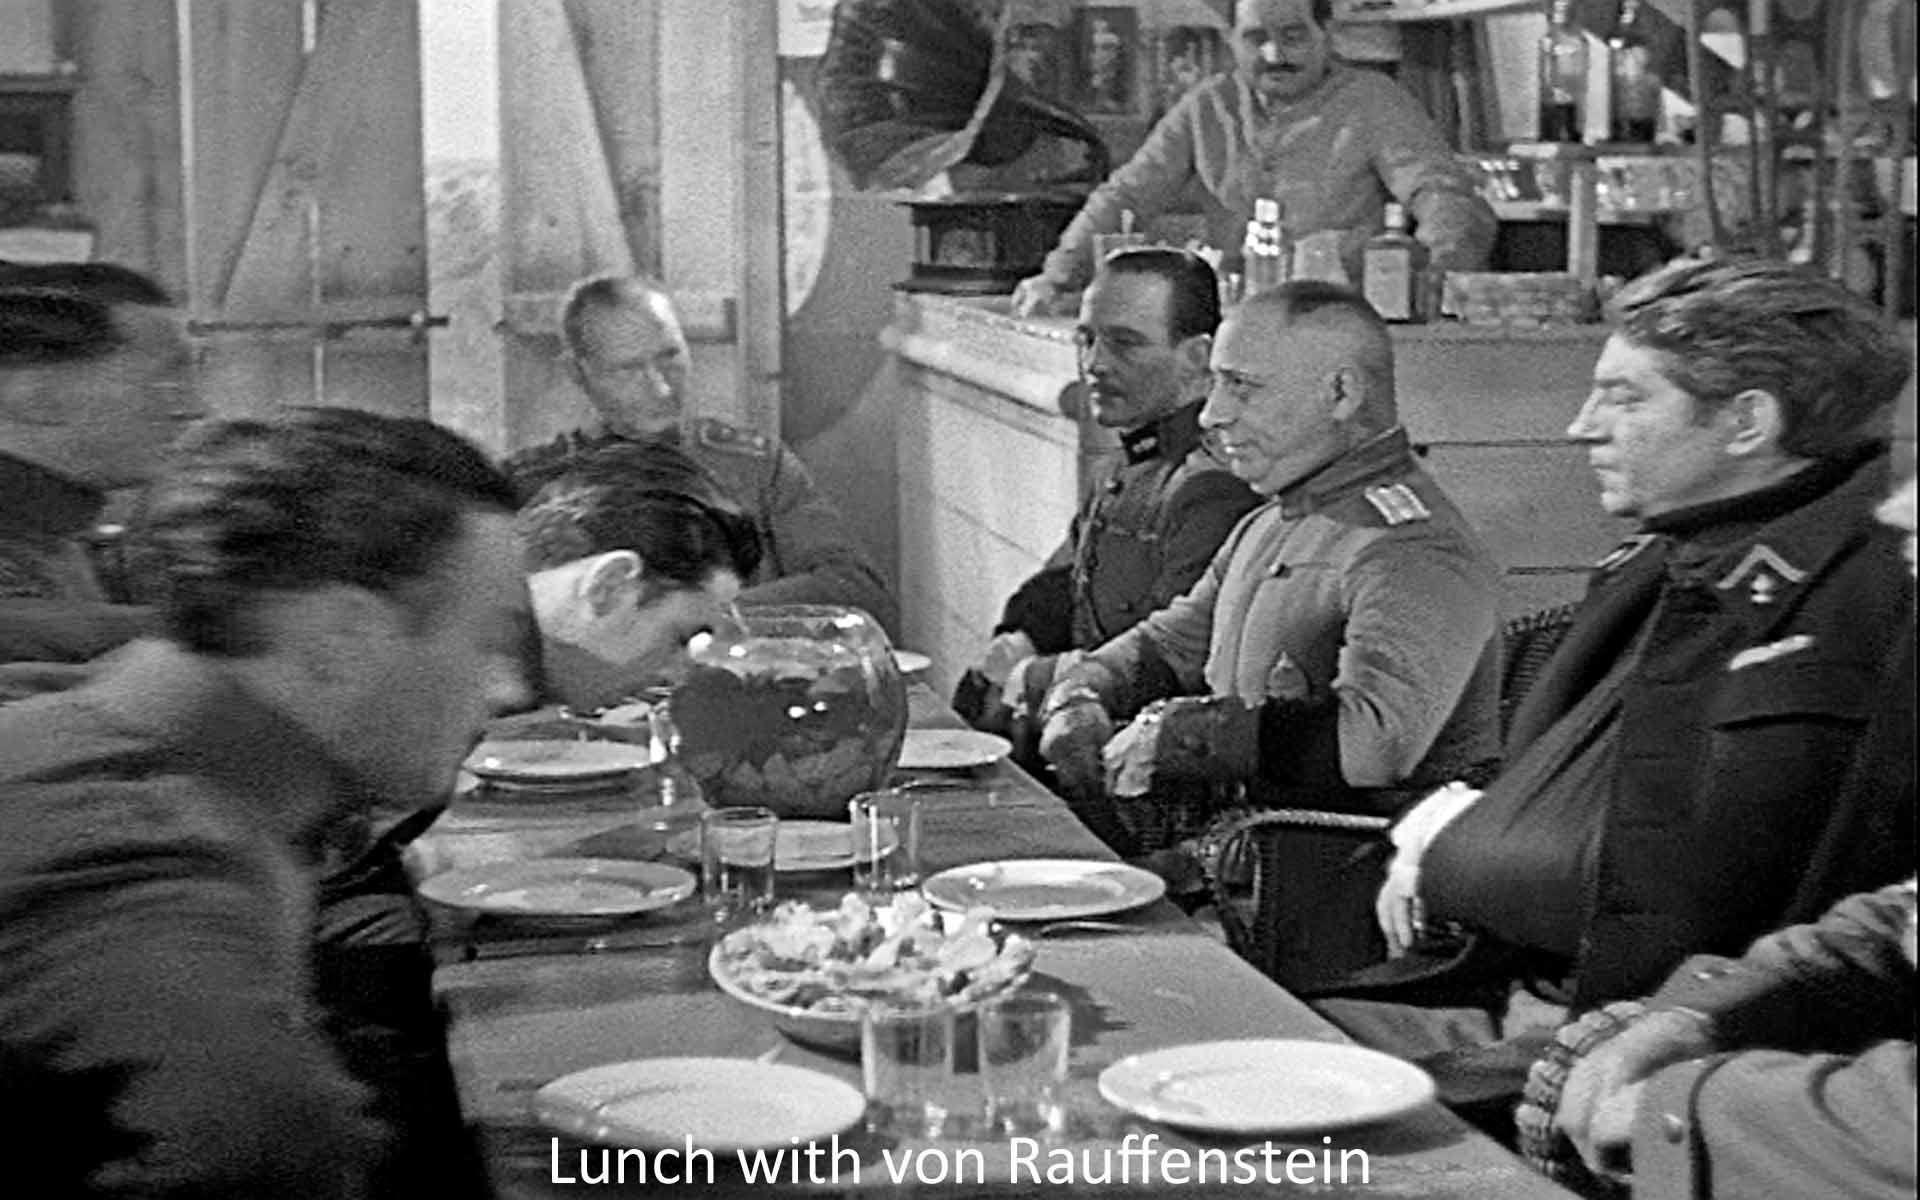 Lunch with von Rauffenstein